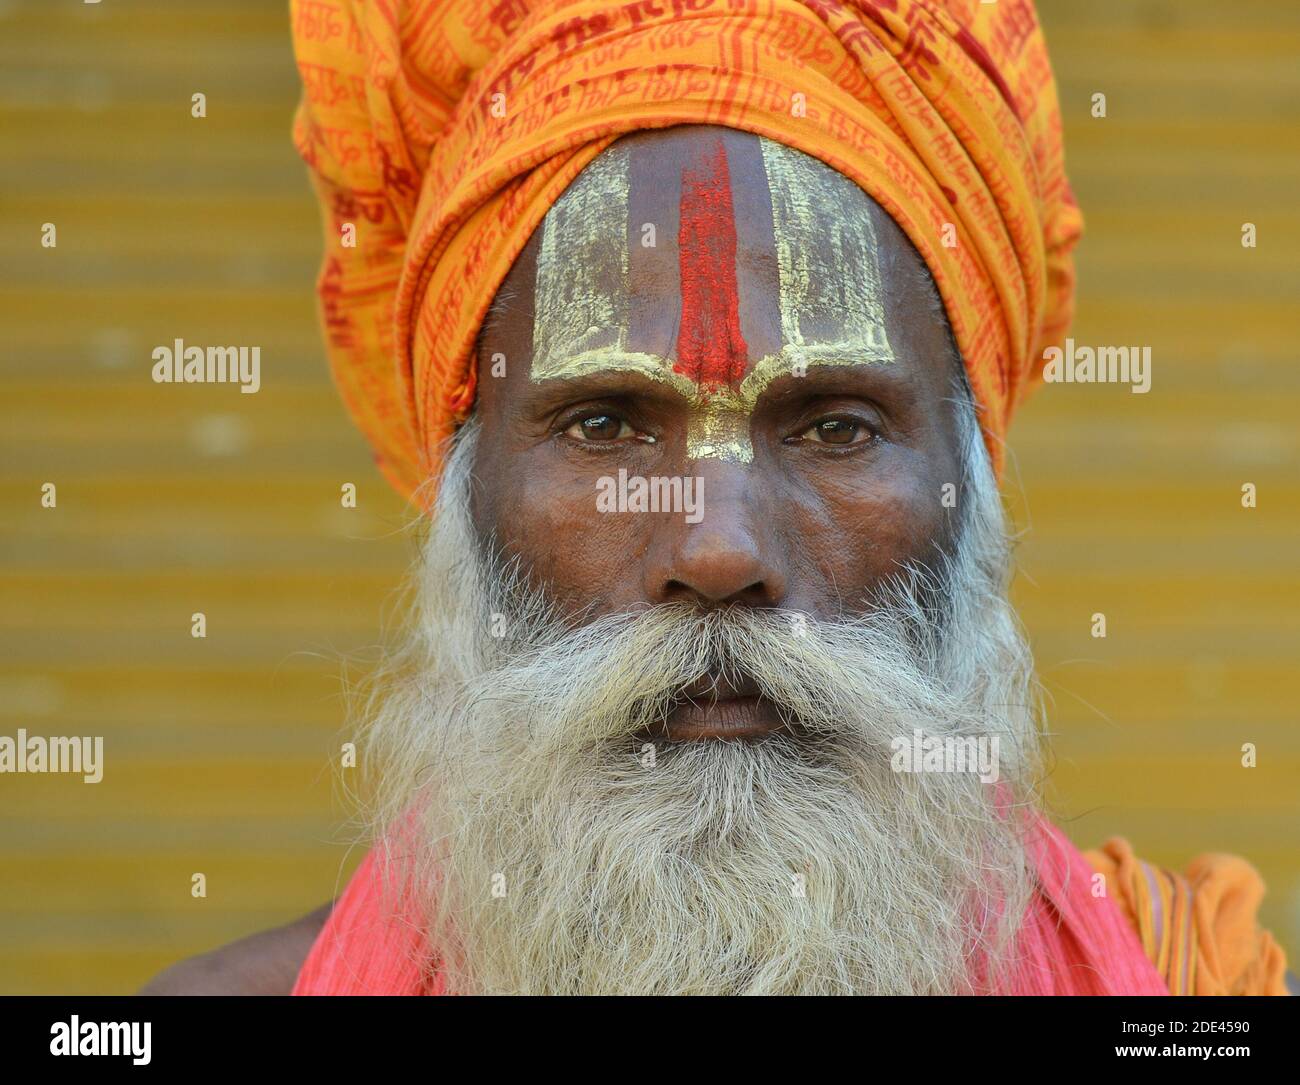 Stern suchen ernst indischen Vaishnavite Hindu Sadhu mit gemalten Urdhva pundra auf der Stirn trägt einen orangen Turban und starrt auf die Kamera. Stockfoto